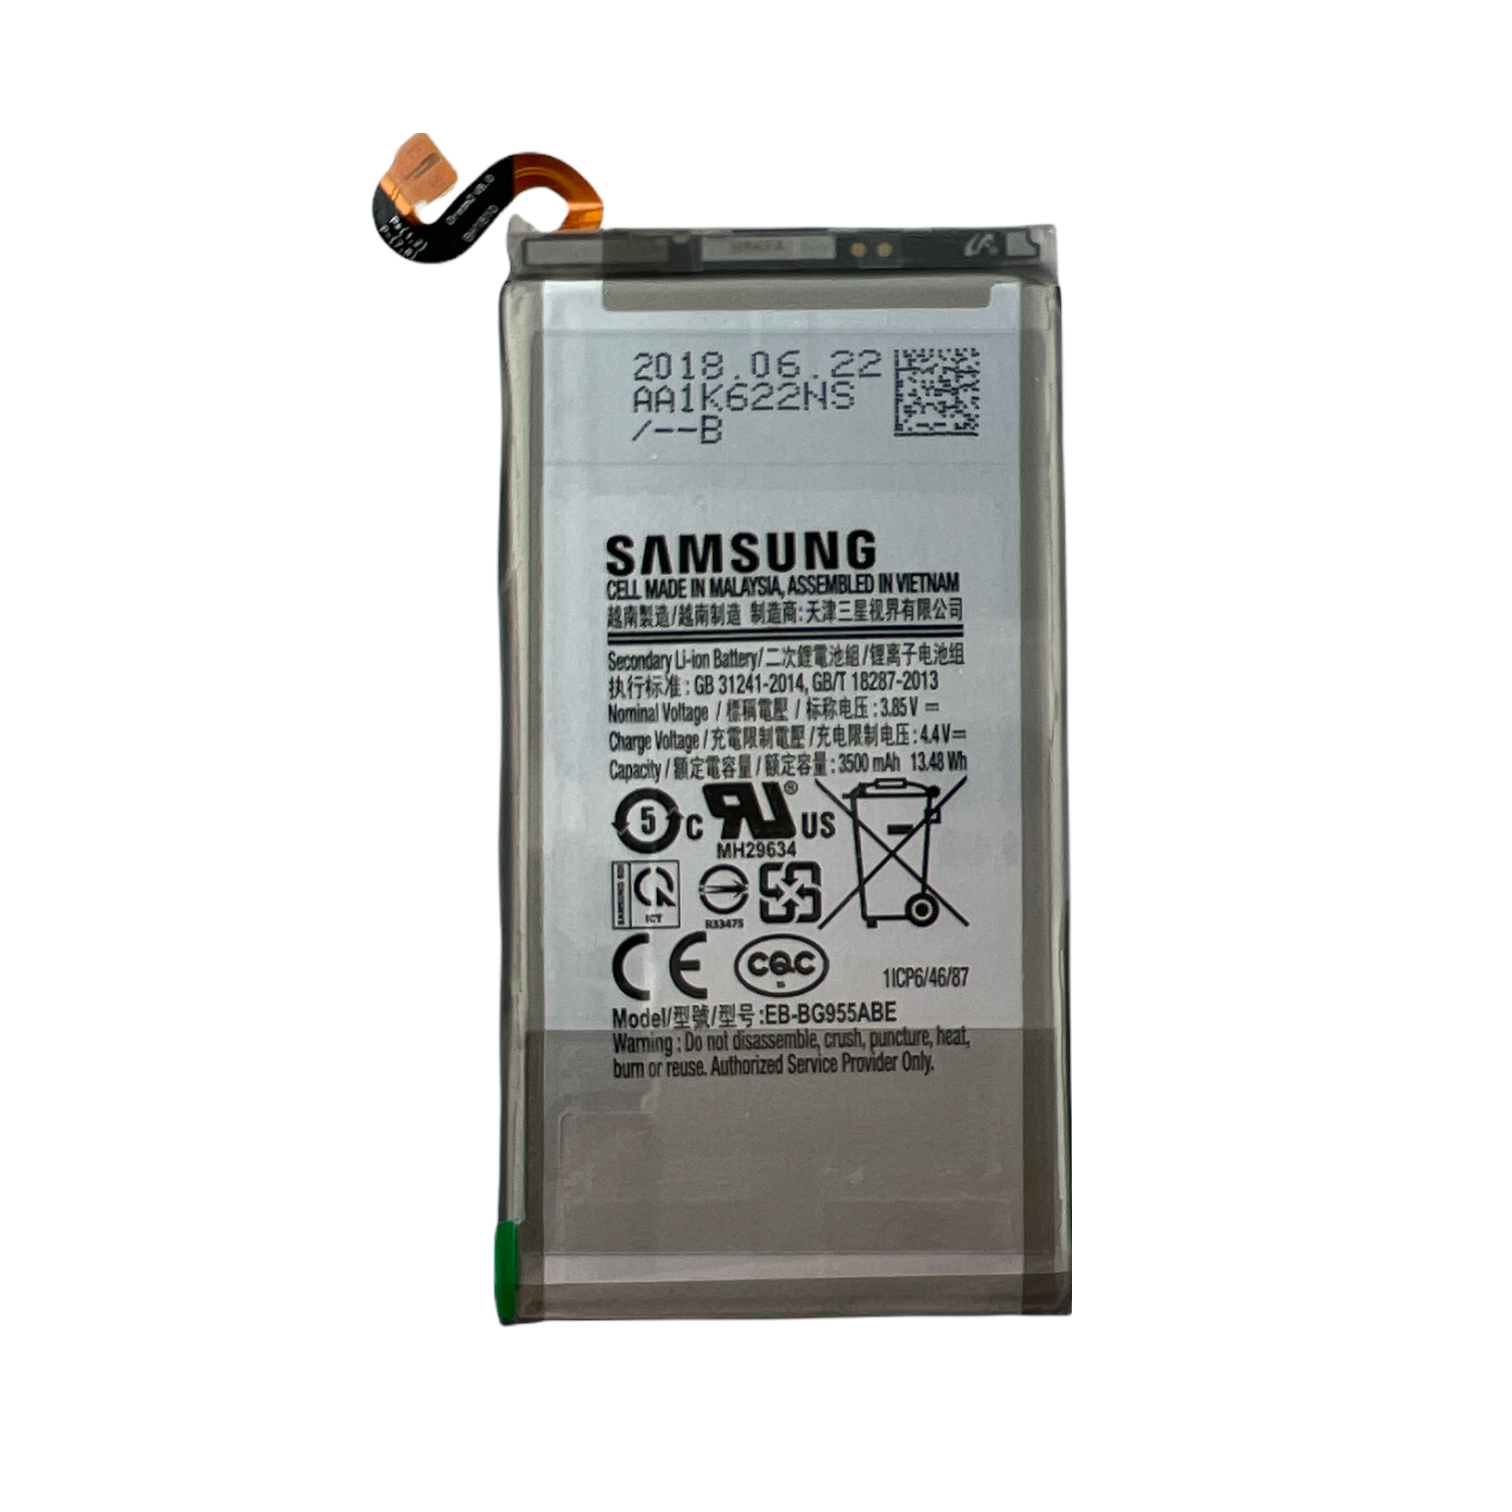 Ten einde raad Helm Blauwdruk Samsung S8 Plus batterij - Zetema